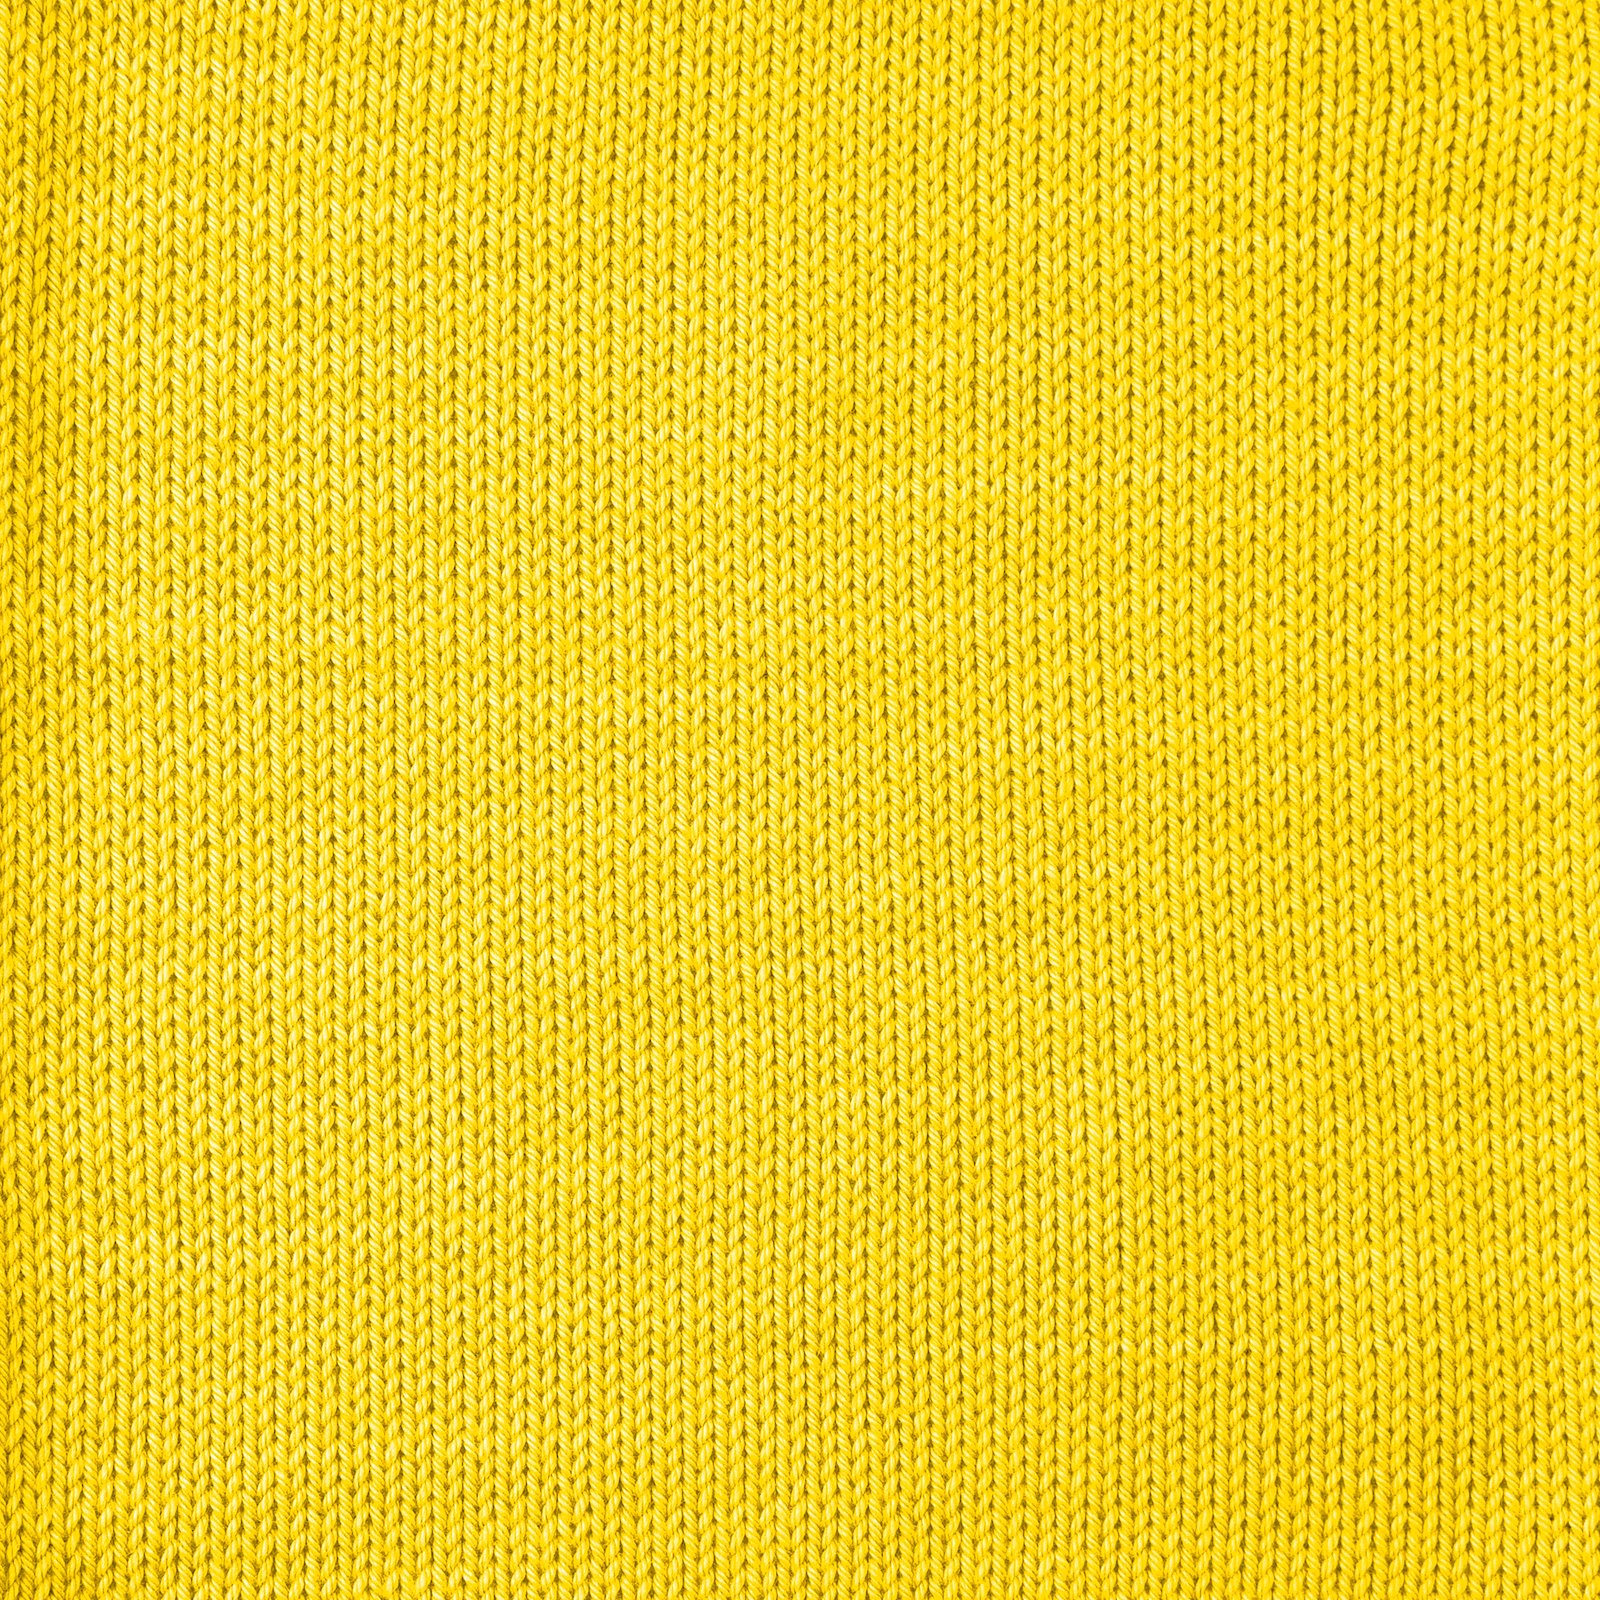 FRAYA, 100% cotton yarn "Colourful", yellow 90060005_sskit